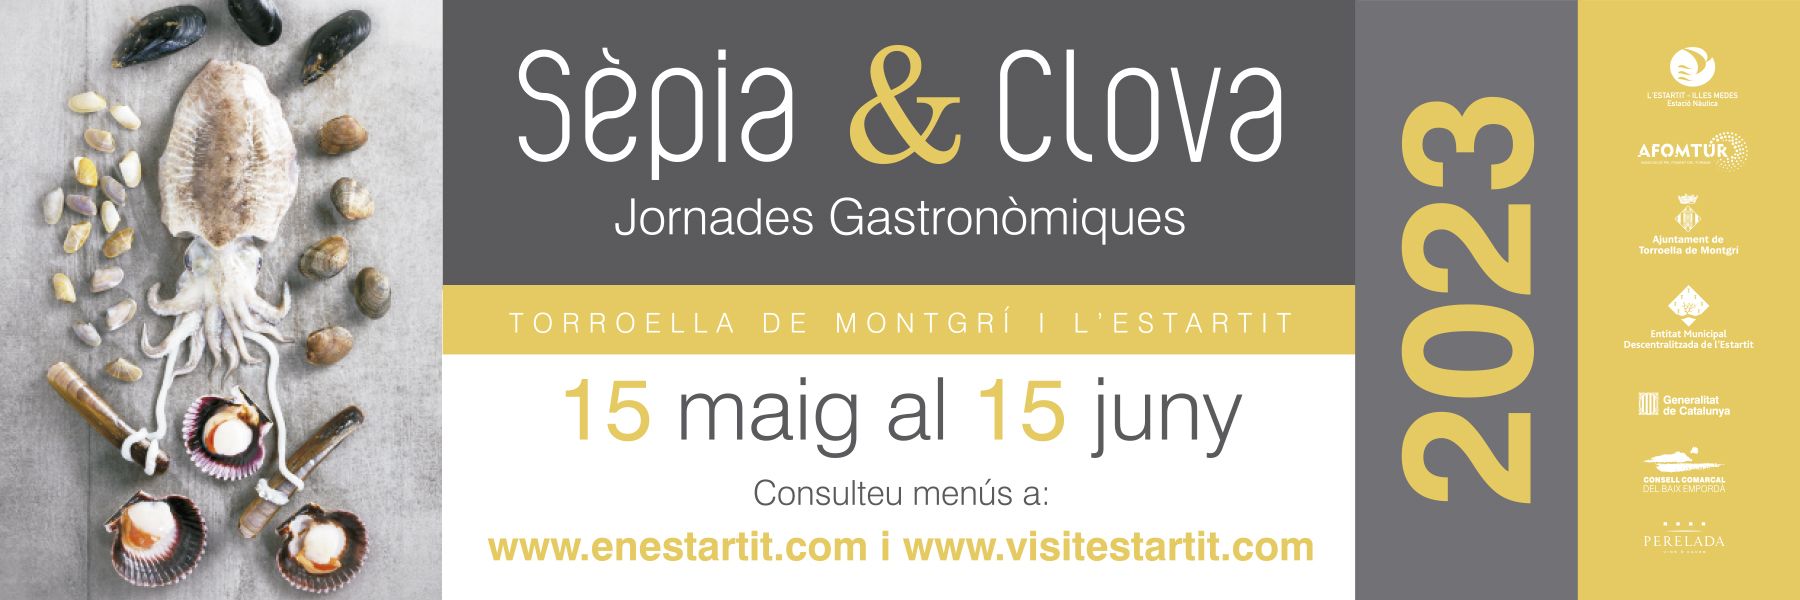 Jornades Gastronòmiques Sèpia i Clova